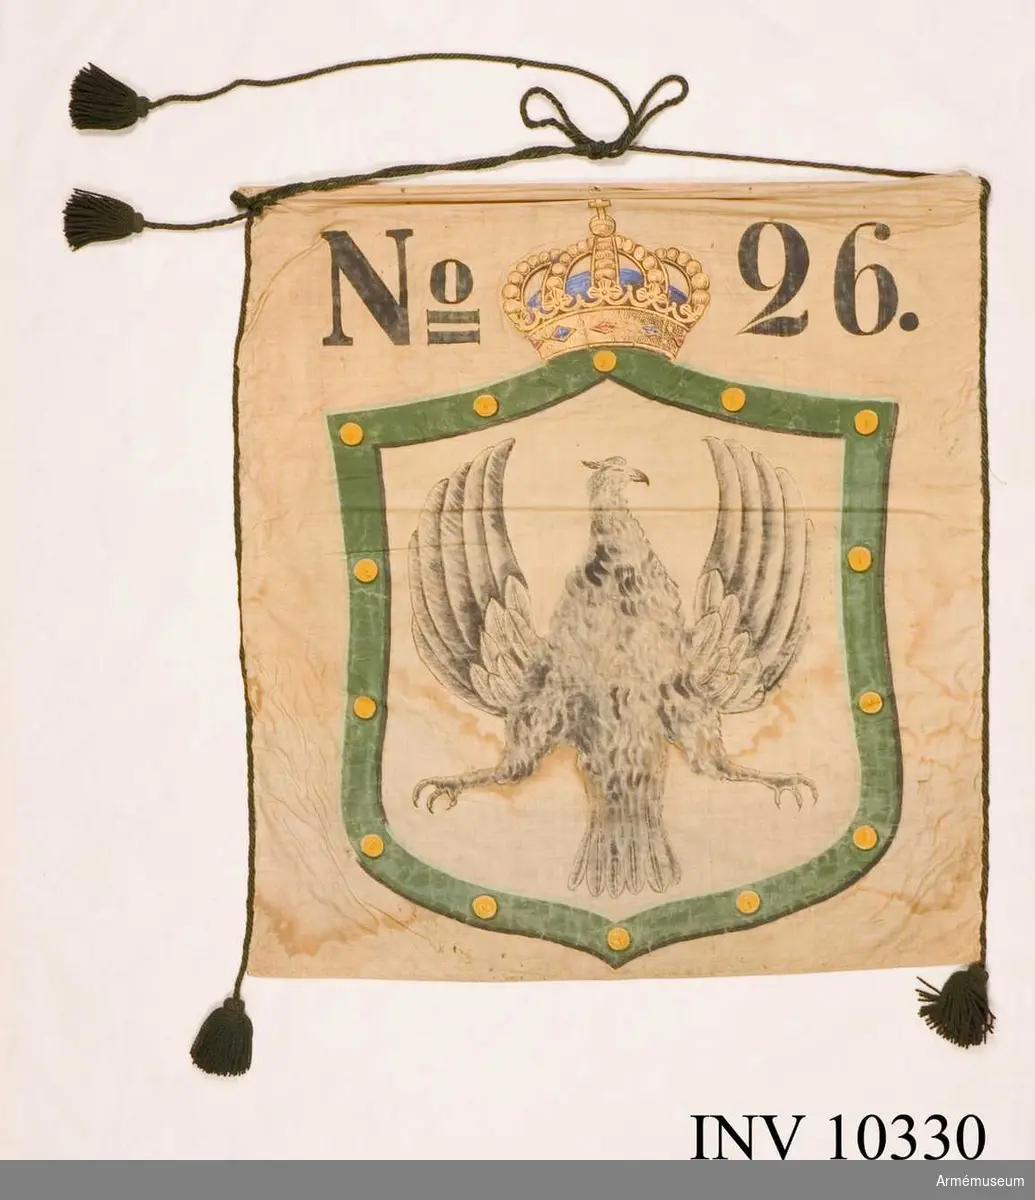 Grupp B I.

Bottentyg av vit lärft. Långsidorna är kantade med grön bomullssnodd avslutad i tofsar. Två tofsar på den ena sidan, en på den andra. Målad sköld krönt med kunglig krona och märkt No   26. Värmlands vapen i skölden. Standaret är fastspikat vid en träribba.1948-12-17 ink. 481, utdrag ur brev från kapten O Oxehufvud: "Den förra är målad af d.v. löjtnanten Herman Byström och användes vid officerskårens bal 1882 för att bjuda cottillonsdekorationer åt damerna af en liten hornblåsare" ...